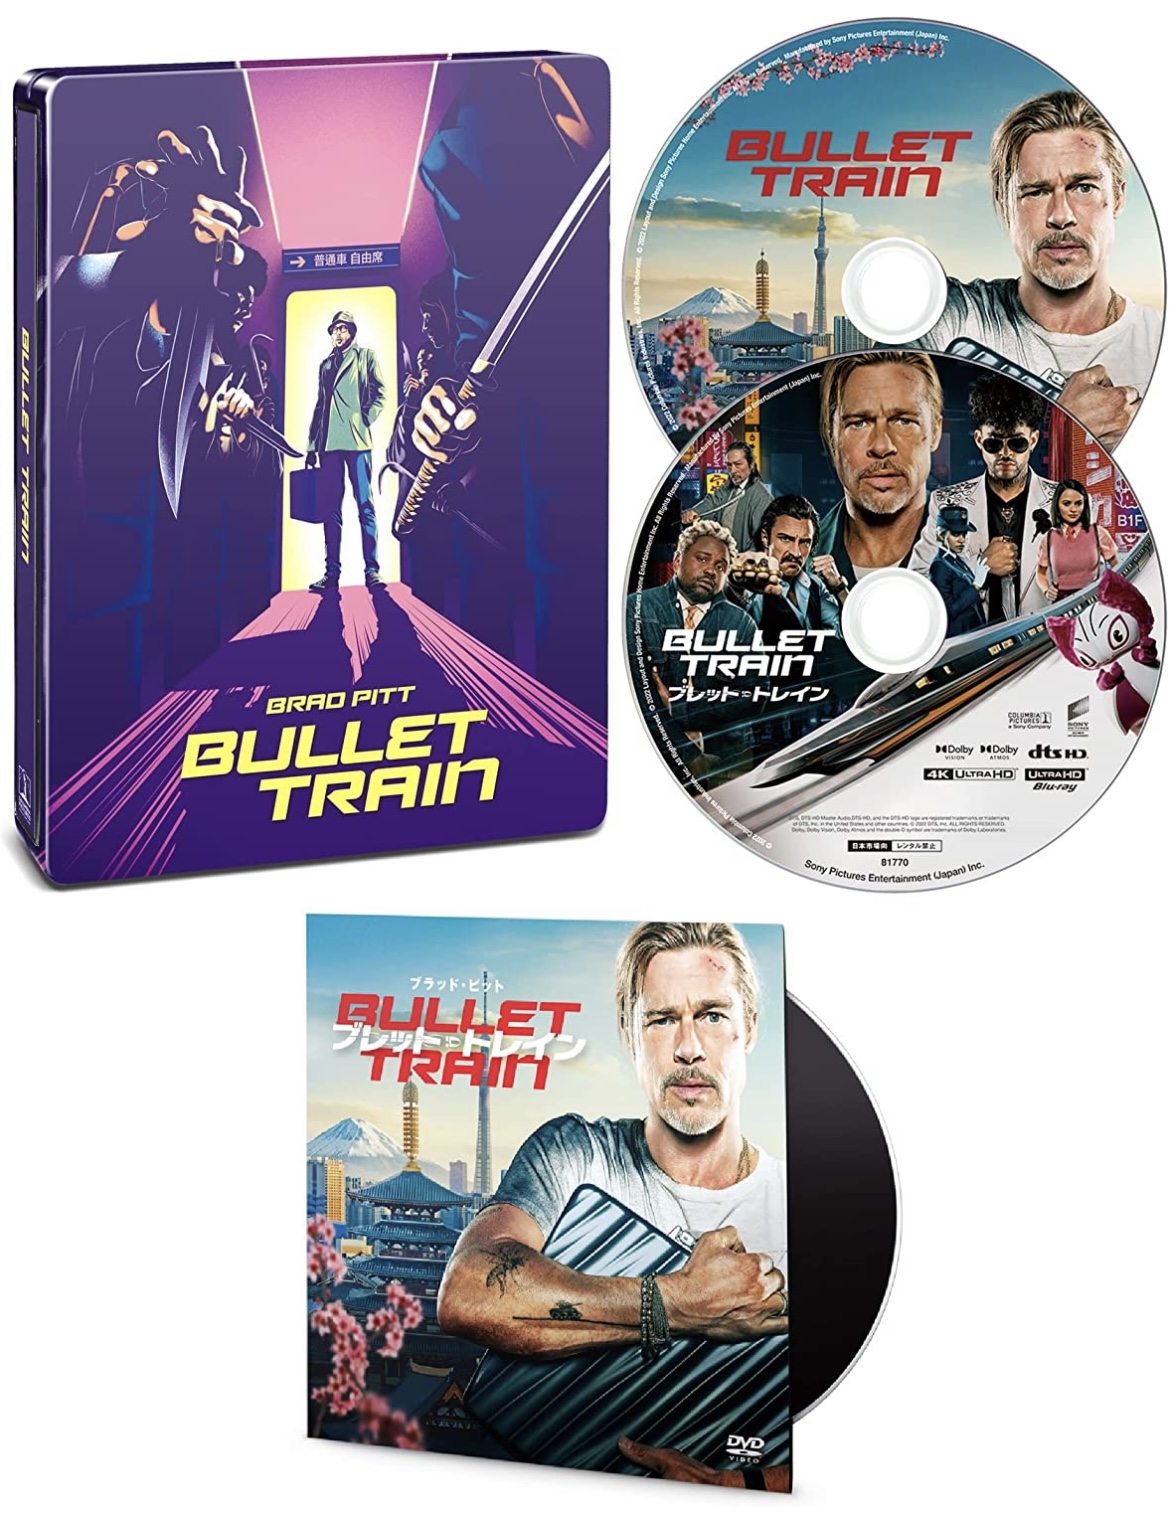 Bullet Train - 4K Ultra HD Blu-ray SteelBook Unboxing 